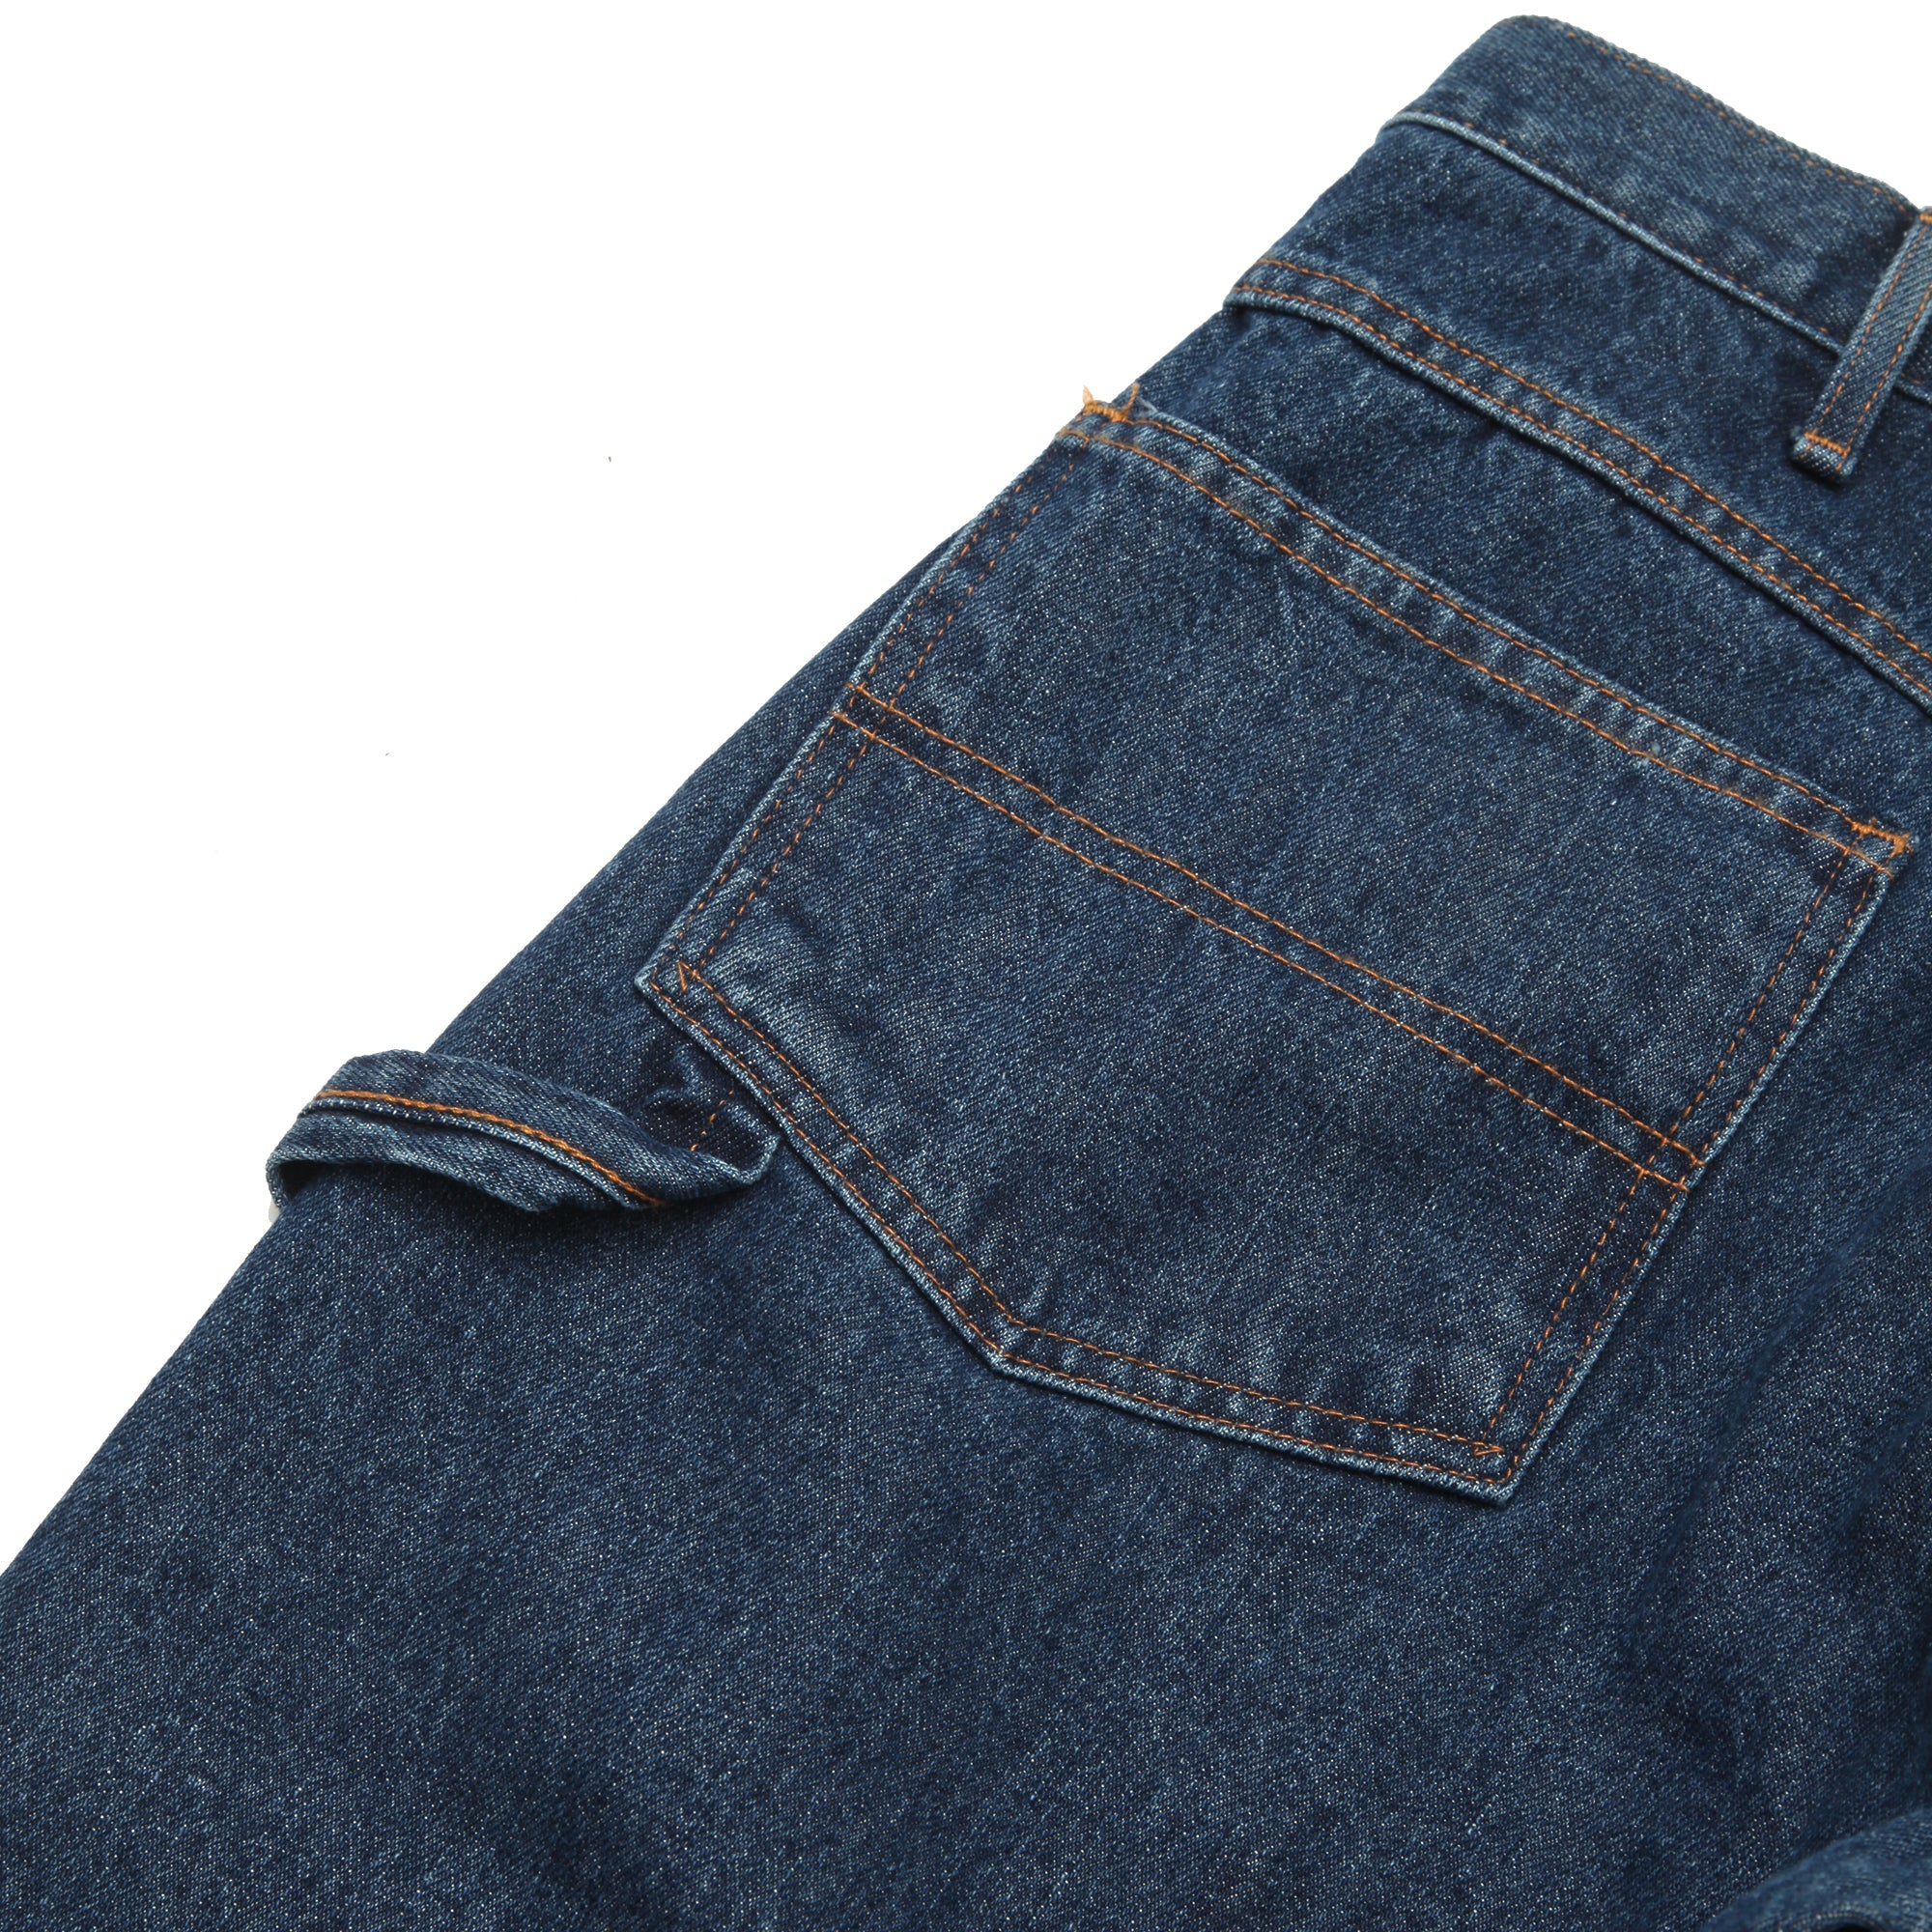 Round House 14oz Carpenter Jeans #1010 - Washed Indigo